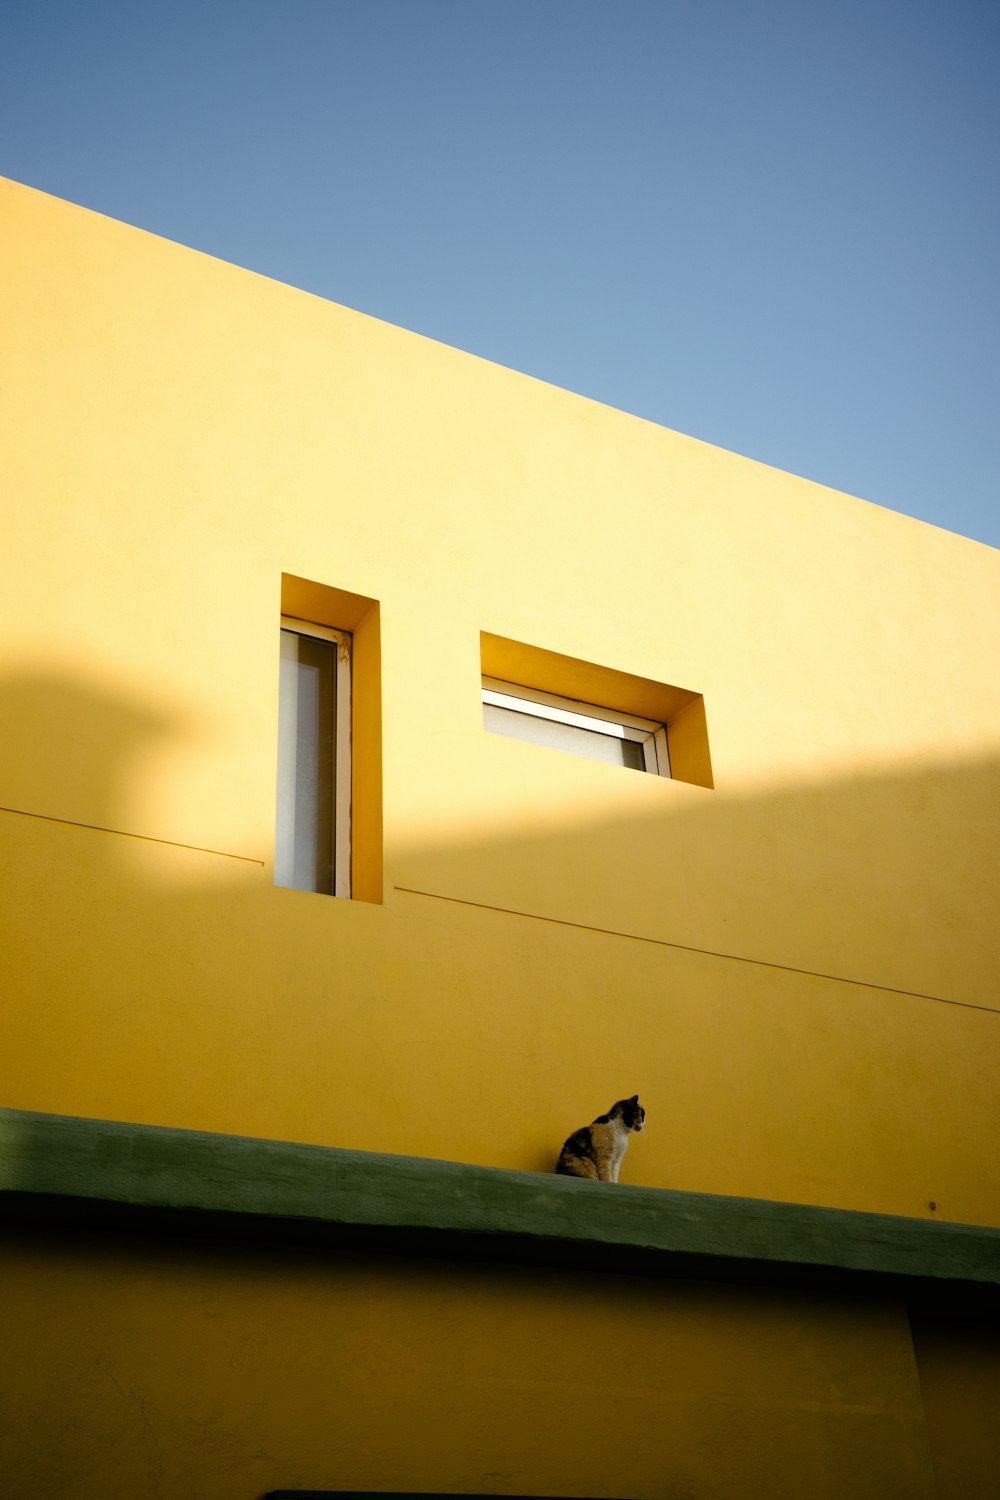 Eine schwarz-weiße Katze sitzt auf dem Dach eines gelben Gebäudes